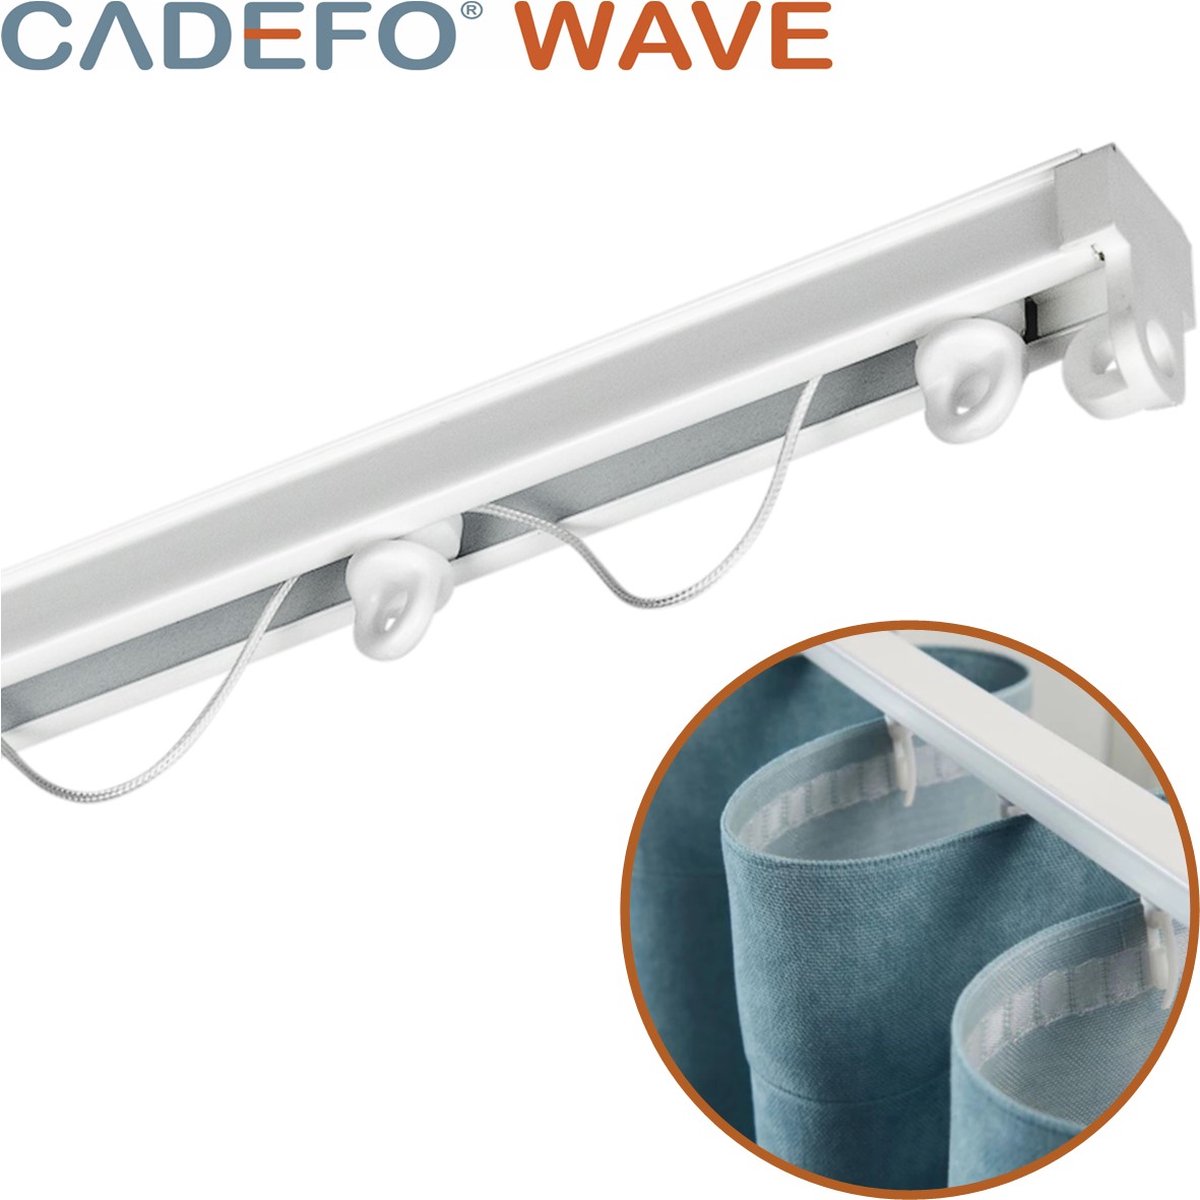 CADEFO WAVE (451 - 500 cm) Gordijnrails - Compleet op maat! - UIT 1 STUK - Leverbaar tot 6 meter - Plafondbevestiging - Lengte 491 cm